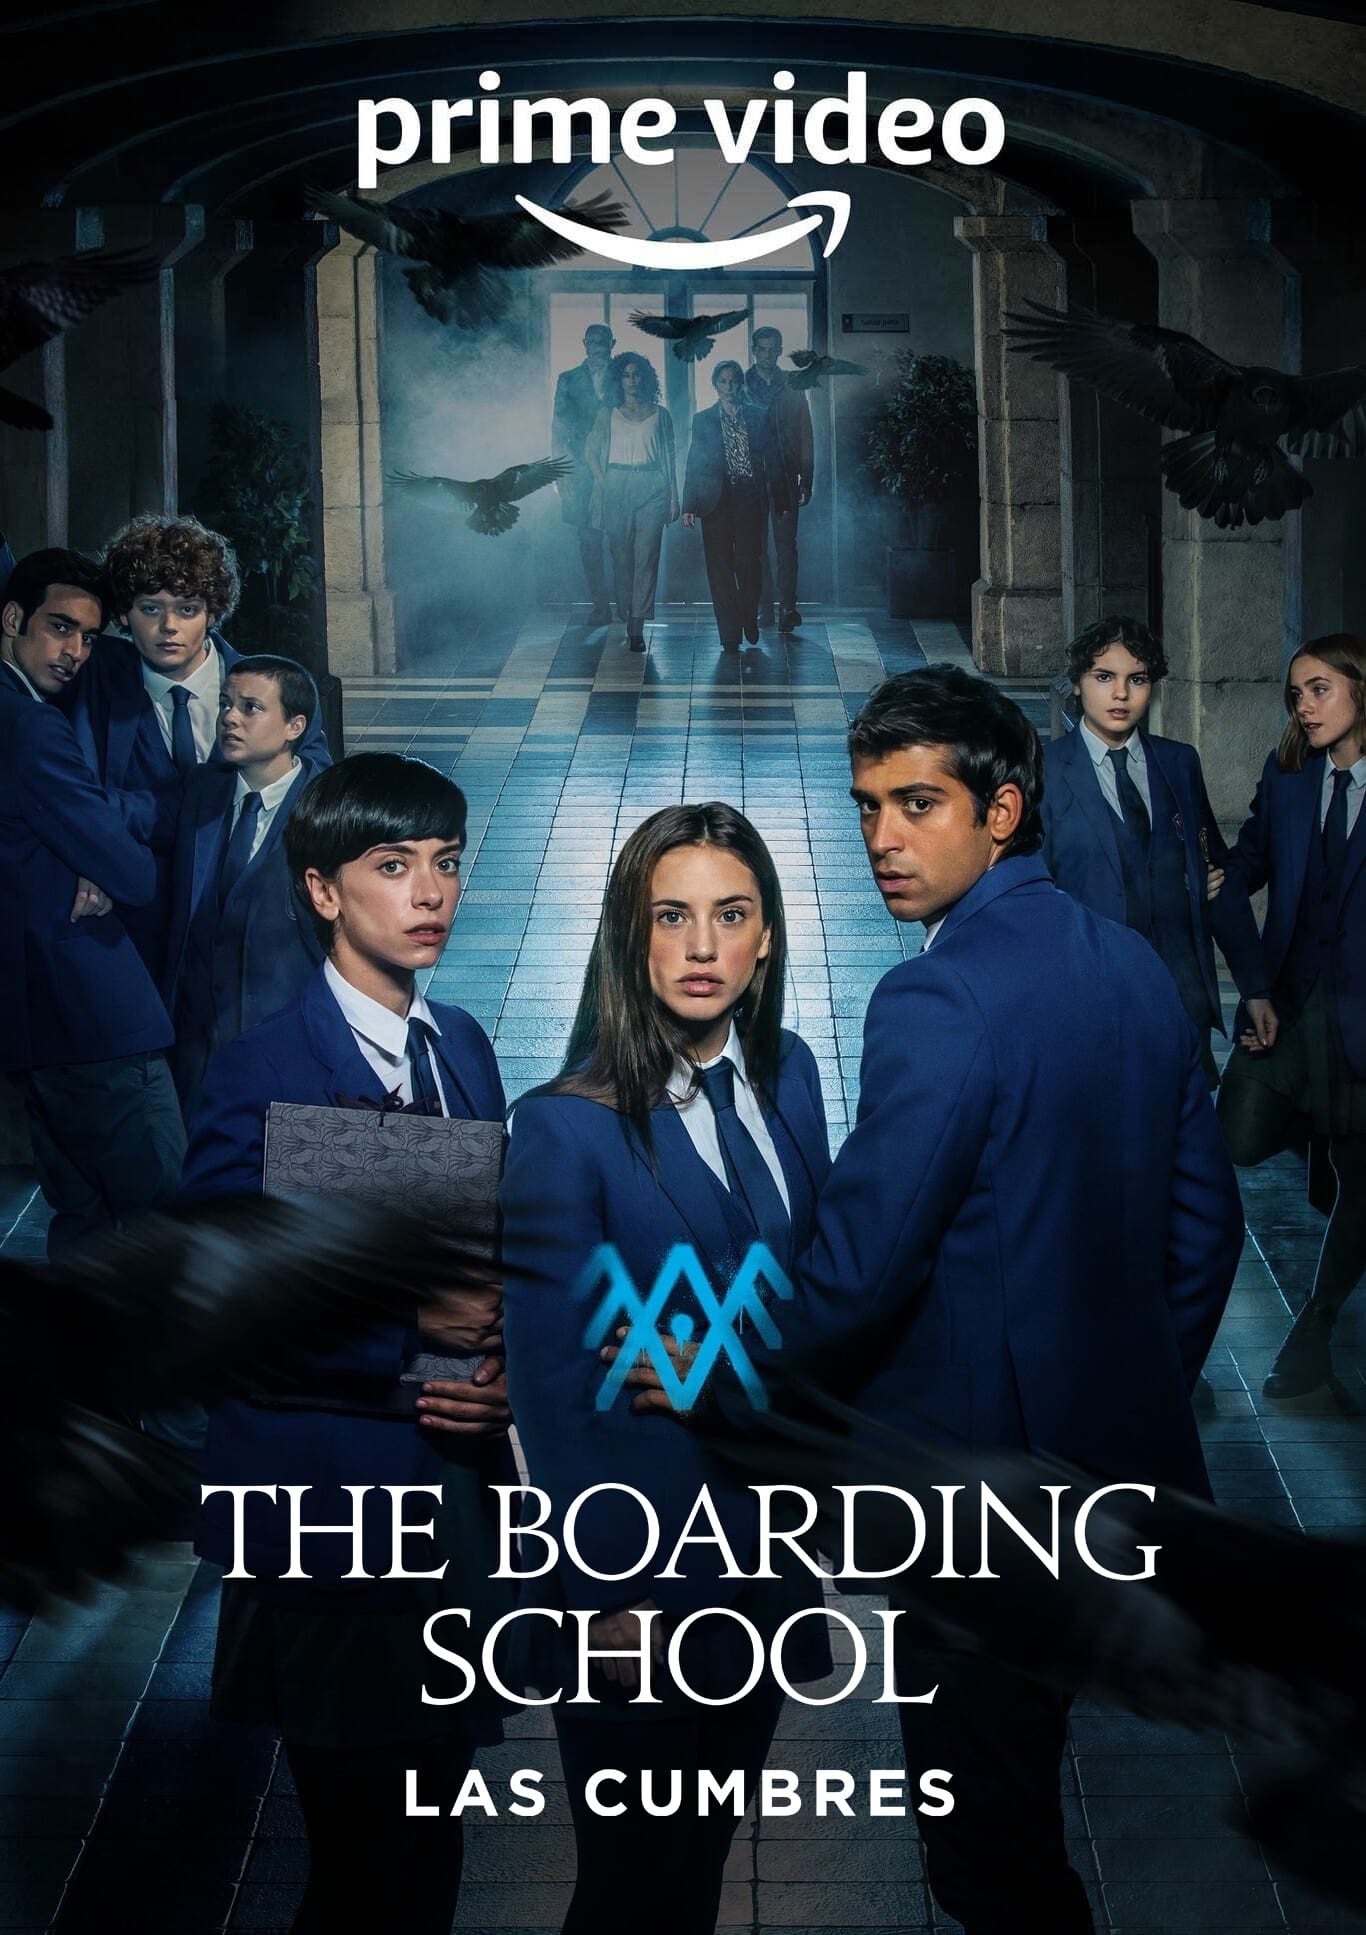 The Boarding School: Las Cumbres (2021) Hindi Dubbed Season 1